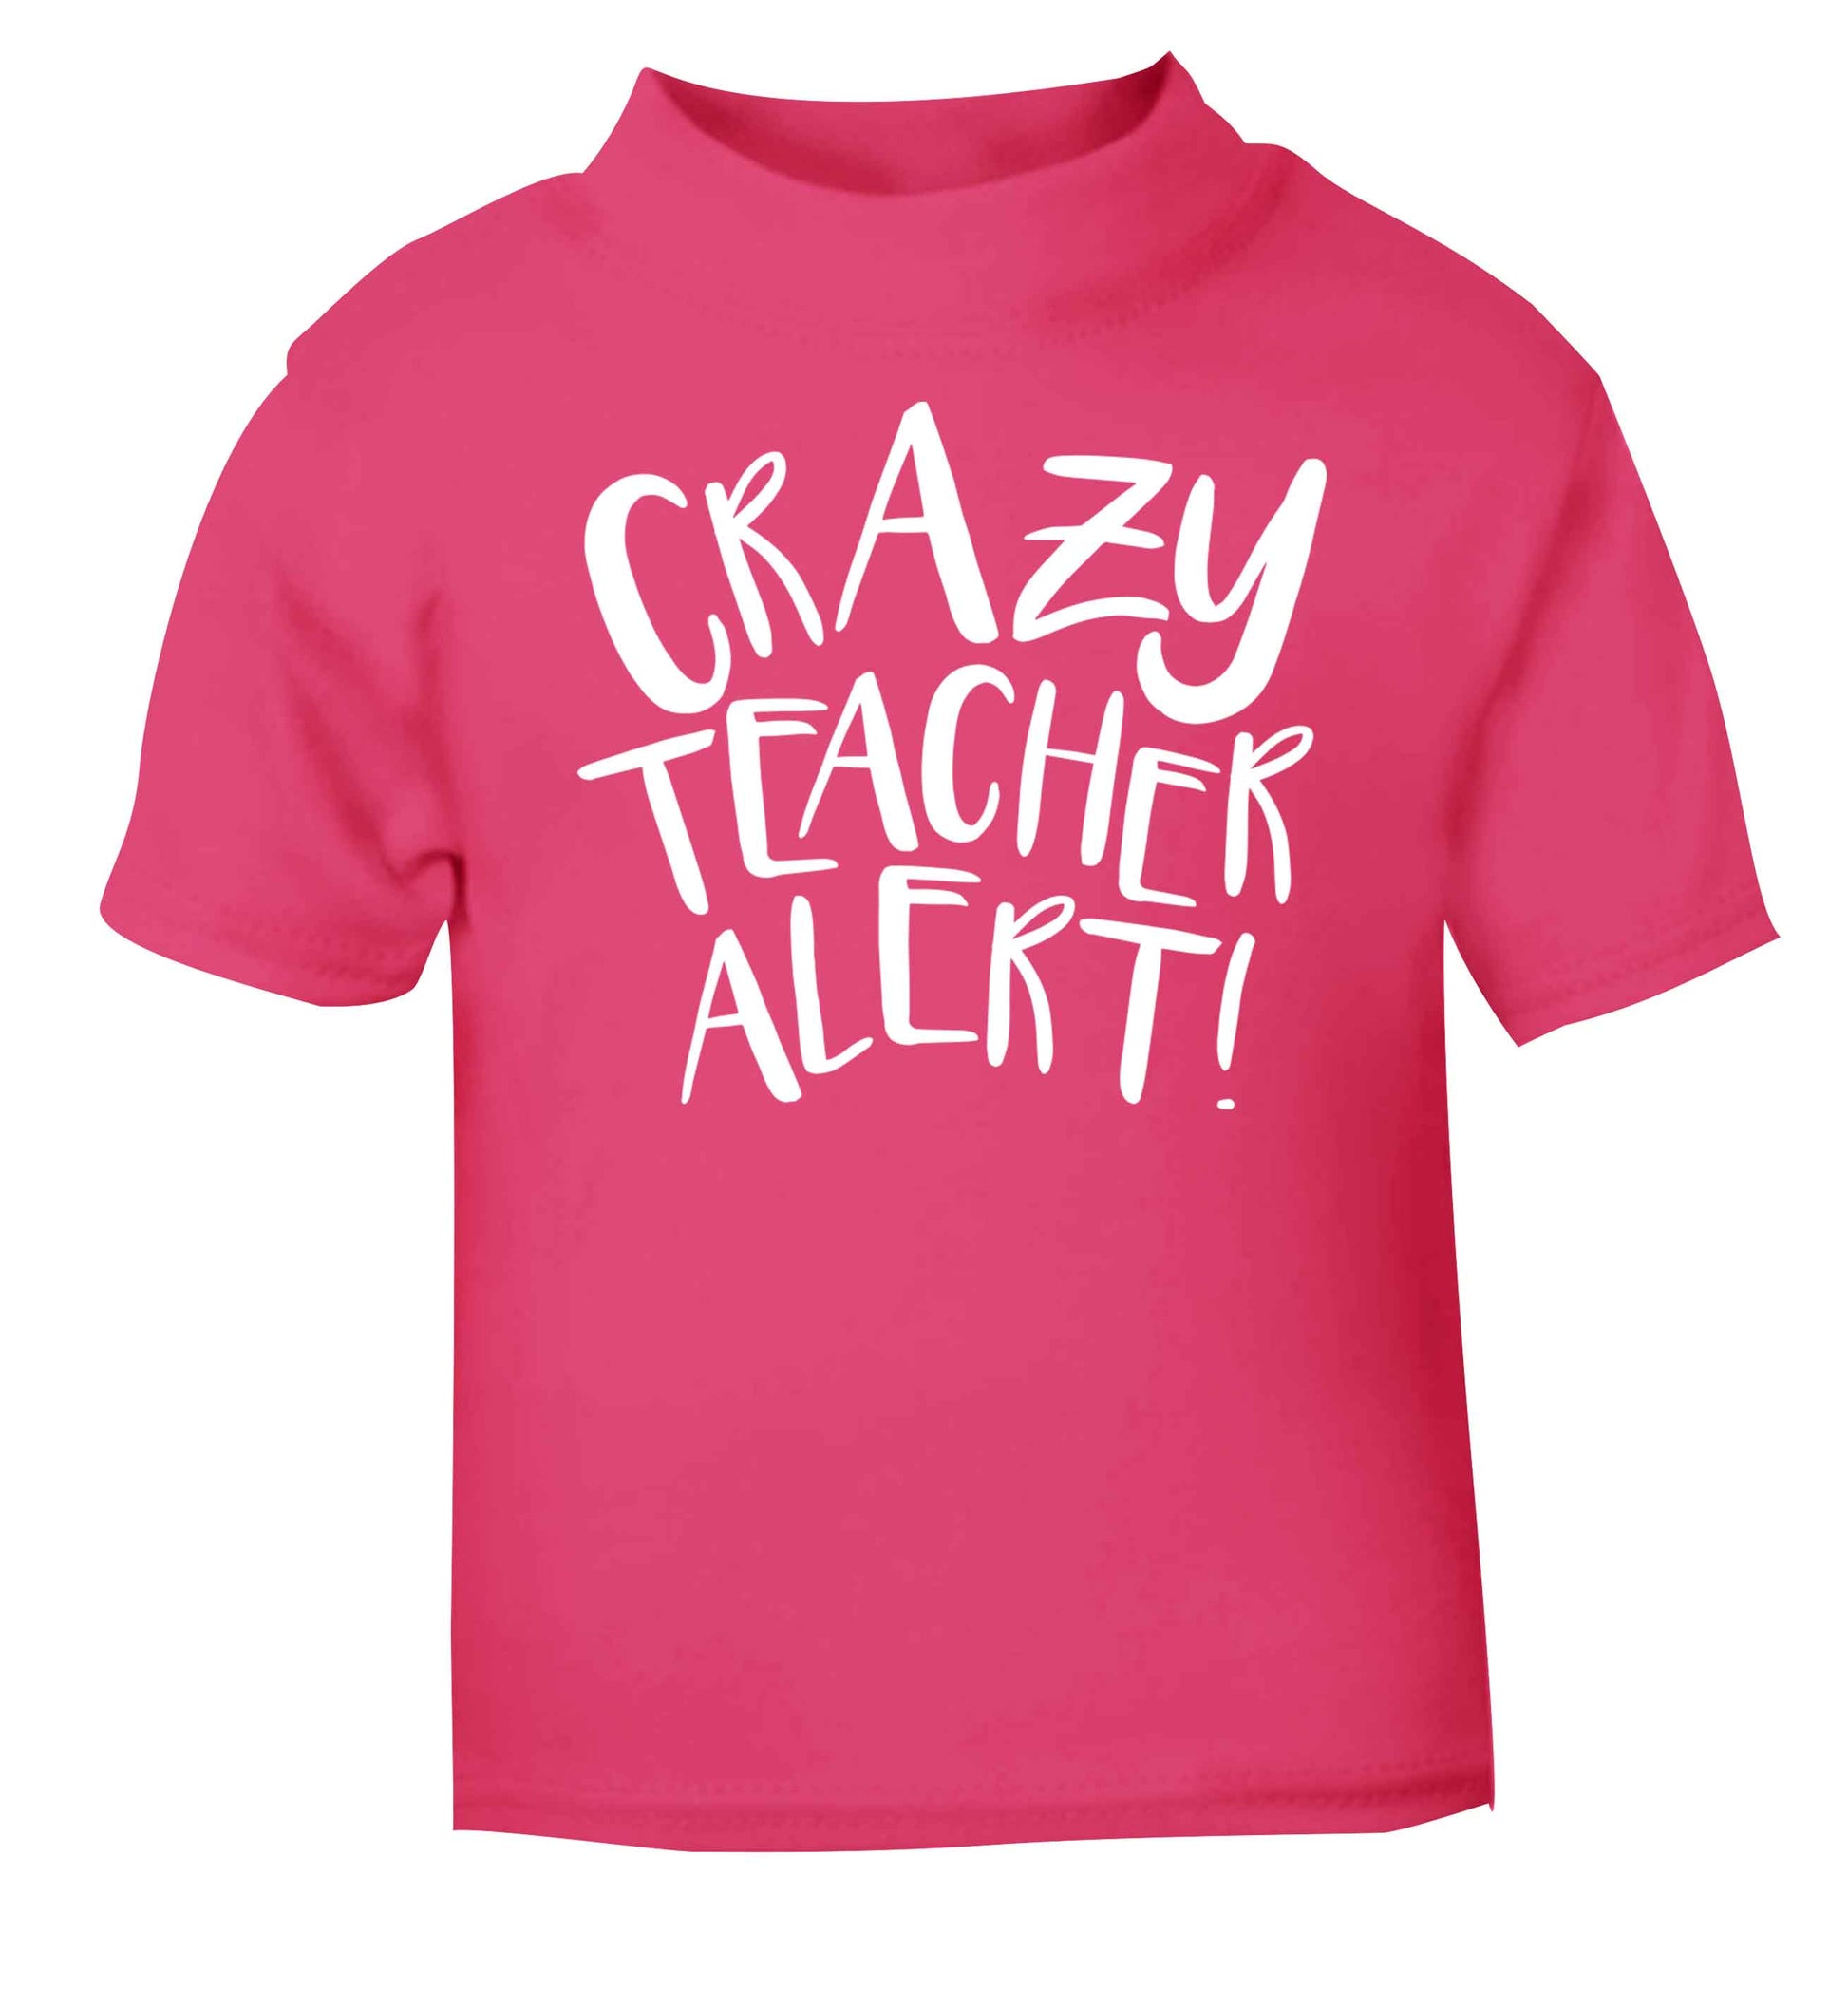 Crazy teacher alert pink baby toddler Tshirt 2 Years